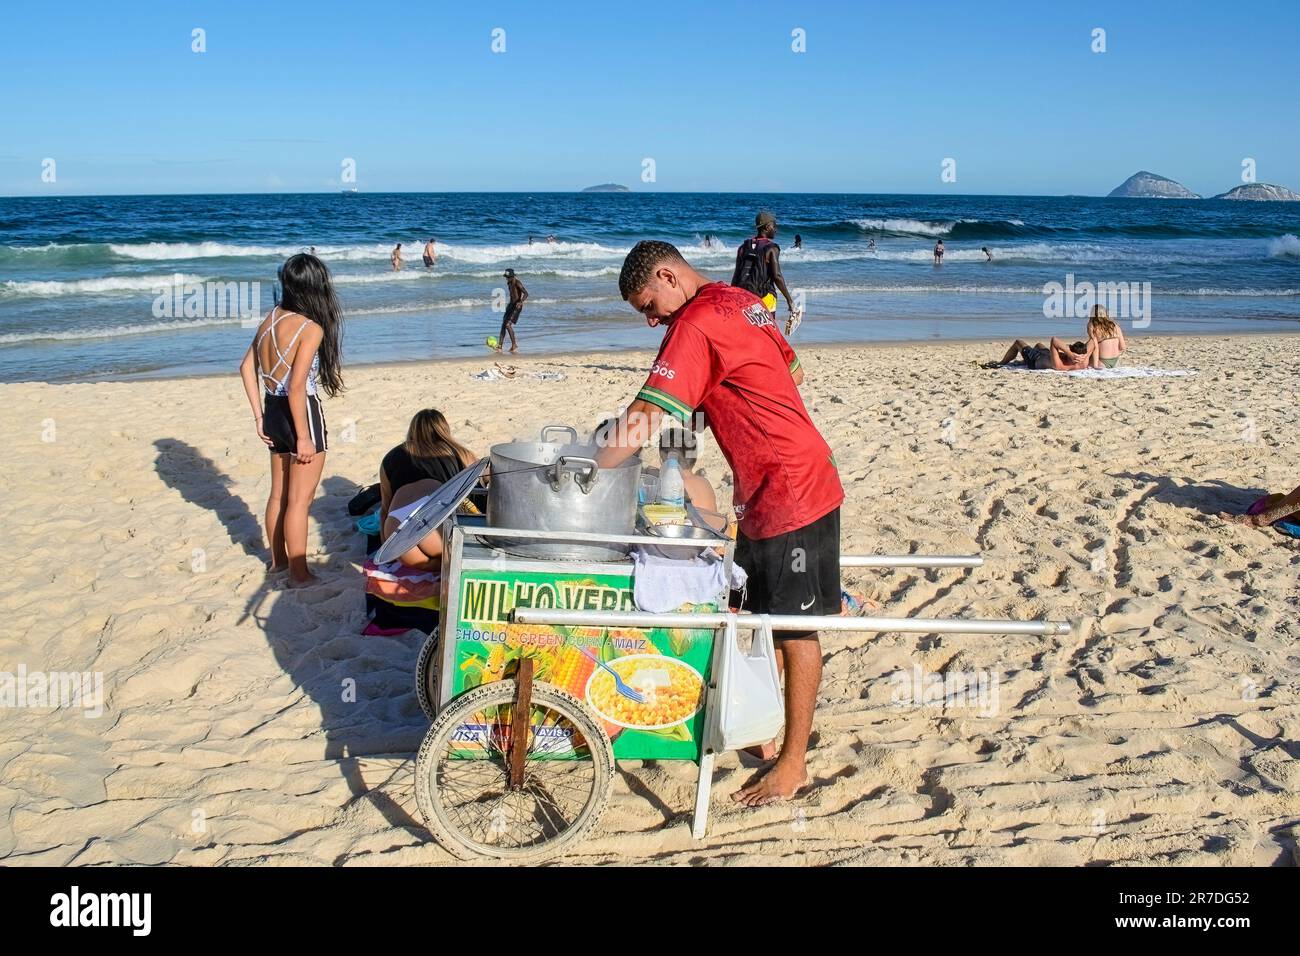 Rio de Janeiro, Brasilien - 25. Mai 2023: Ein Mann steht hinter einem Karren mit der Aufschrift Milho Verd am Copacabana Beach, mit einem Topf auf dem Karren. Strandbesucher und Stockfoto